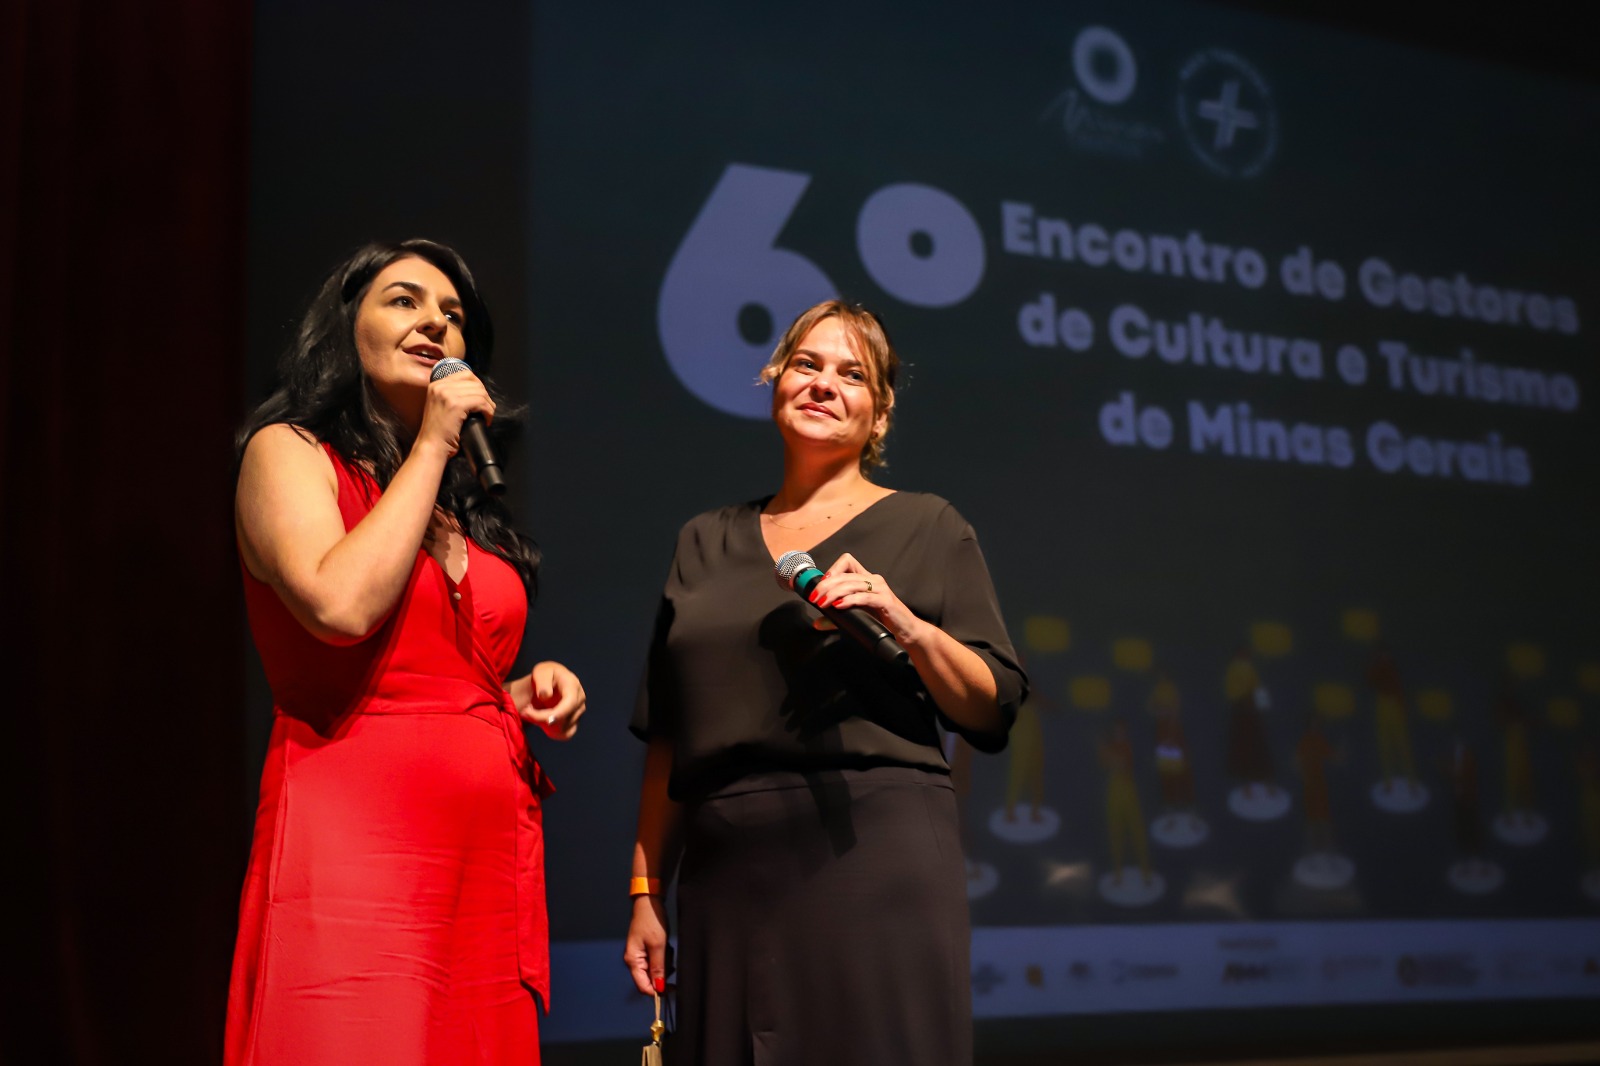 6º Encontro de Gestores de Cultura e Turismo de Minas Gerais registra recorde de inscrições 